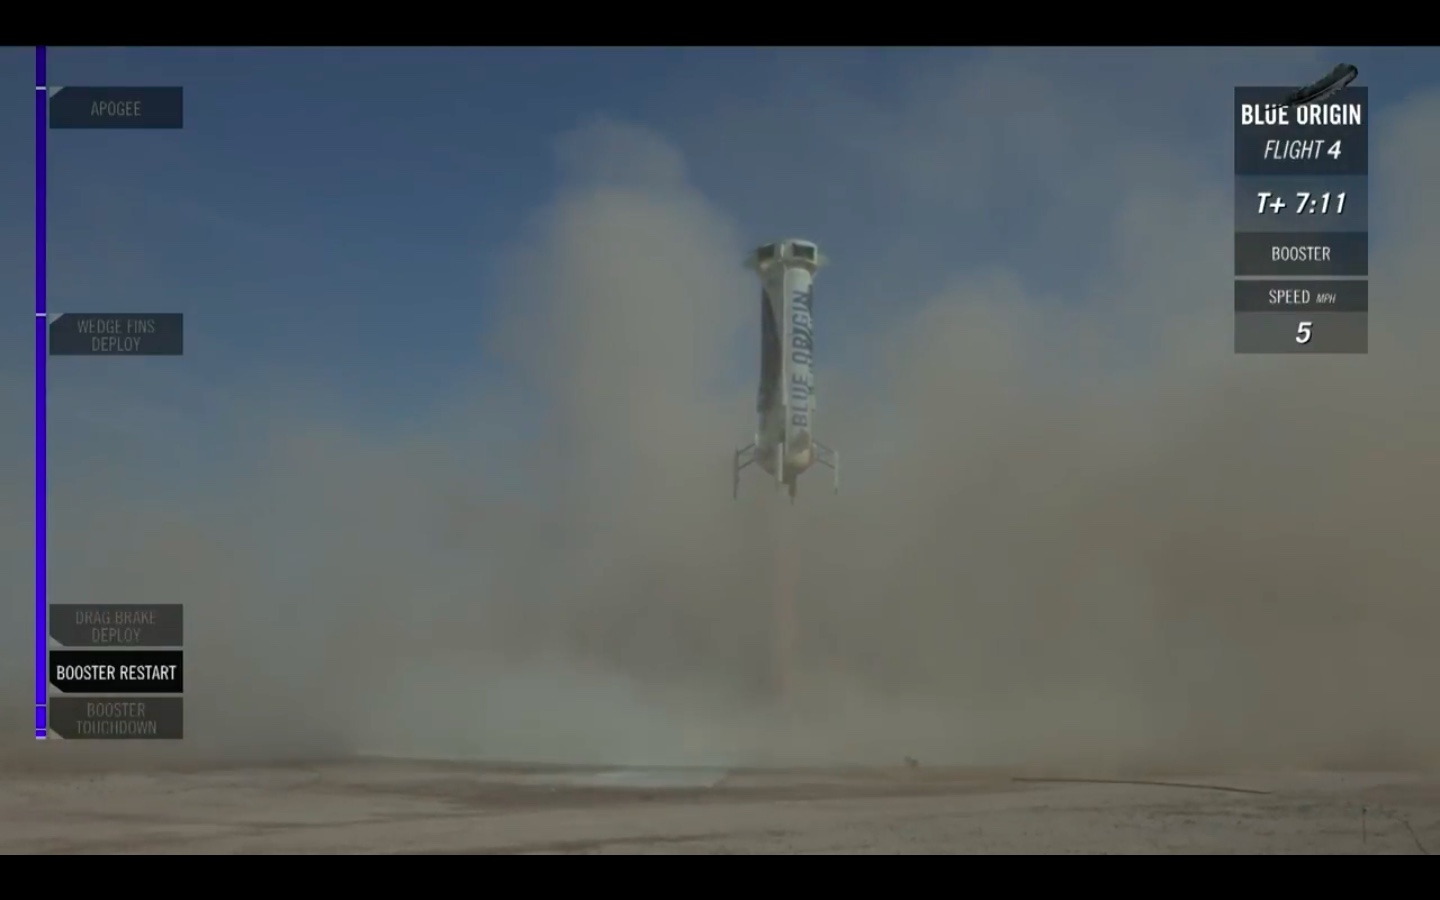 تماشا کنید: شرکت Blue Origin برای چهارمین بار موشک خود را به سلامت فرود آورد /  آماده برای توریسم فضایی